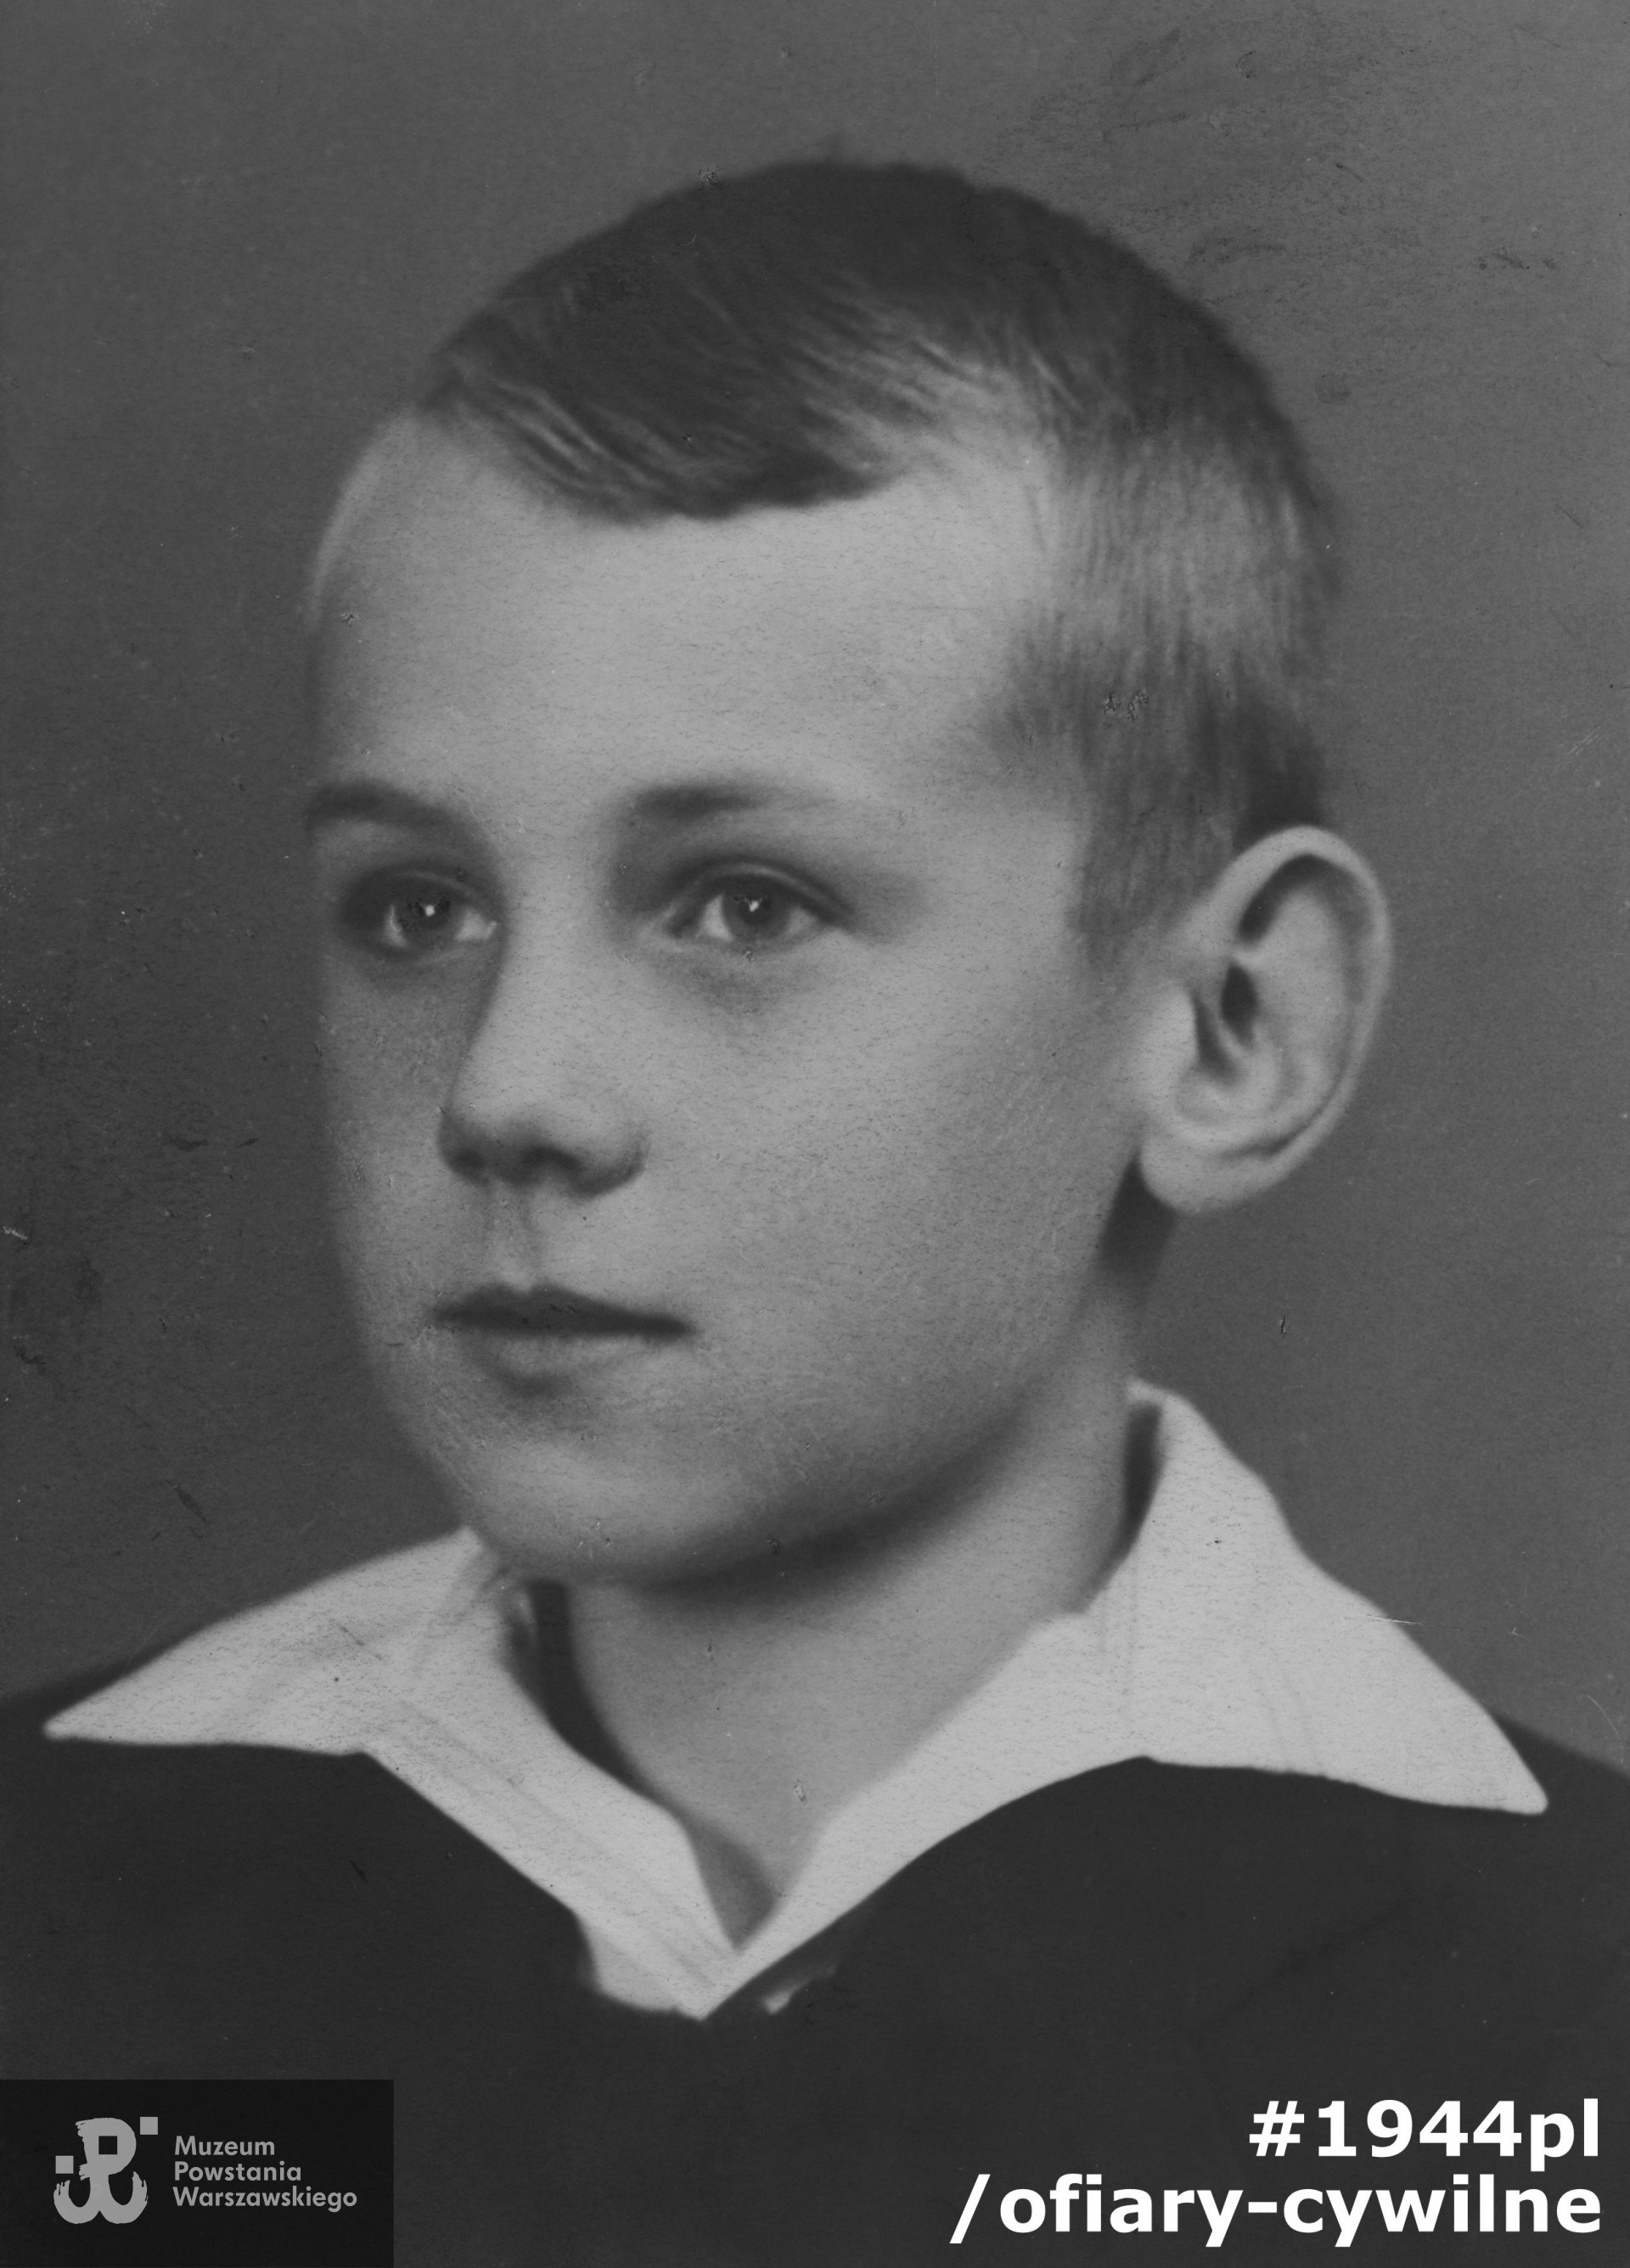 Norbert Dowgwiłło (1931-1944), fotografia ze zbiorów Muzeum Powstania Warszawskiego nr akcesji P/9166